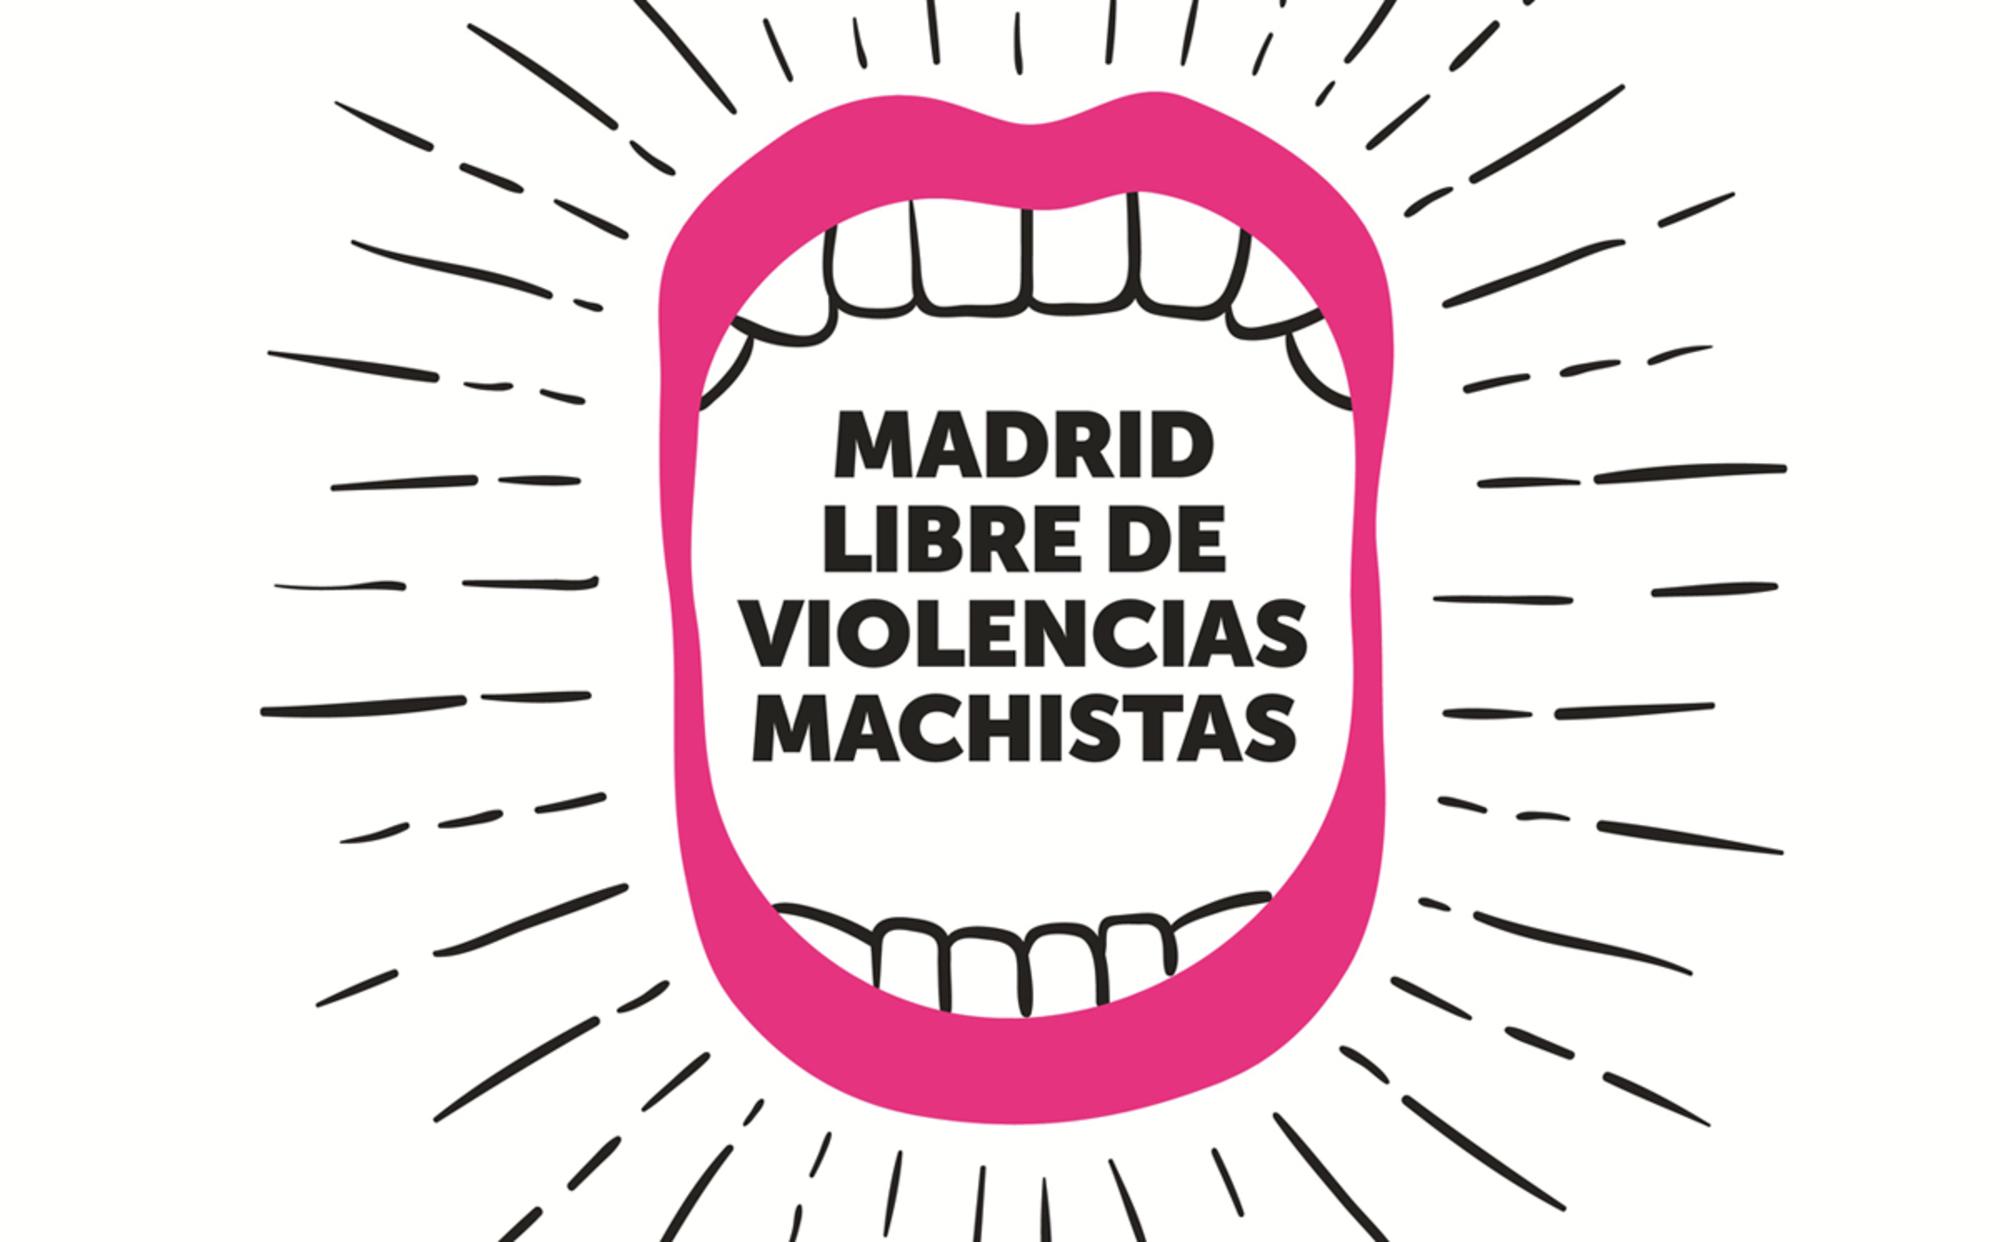 Madrid Libre de Violencias Machistas